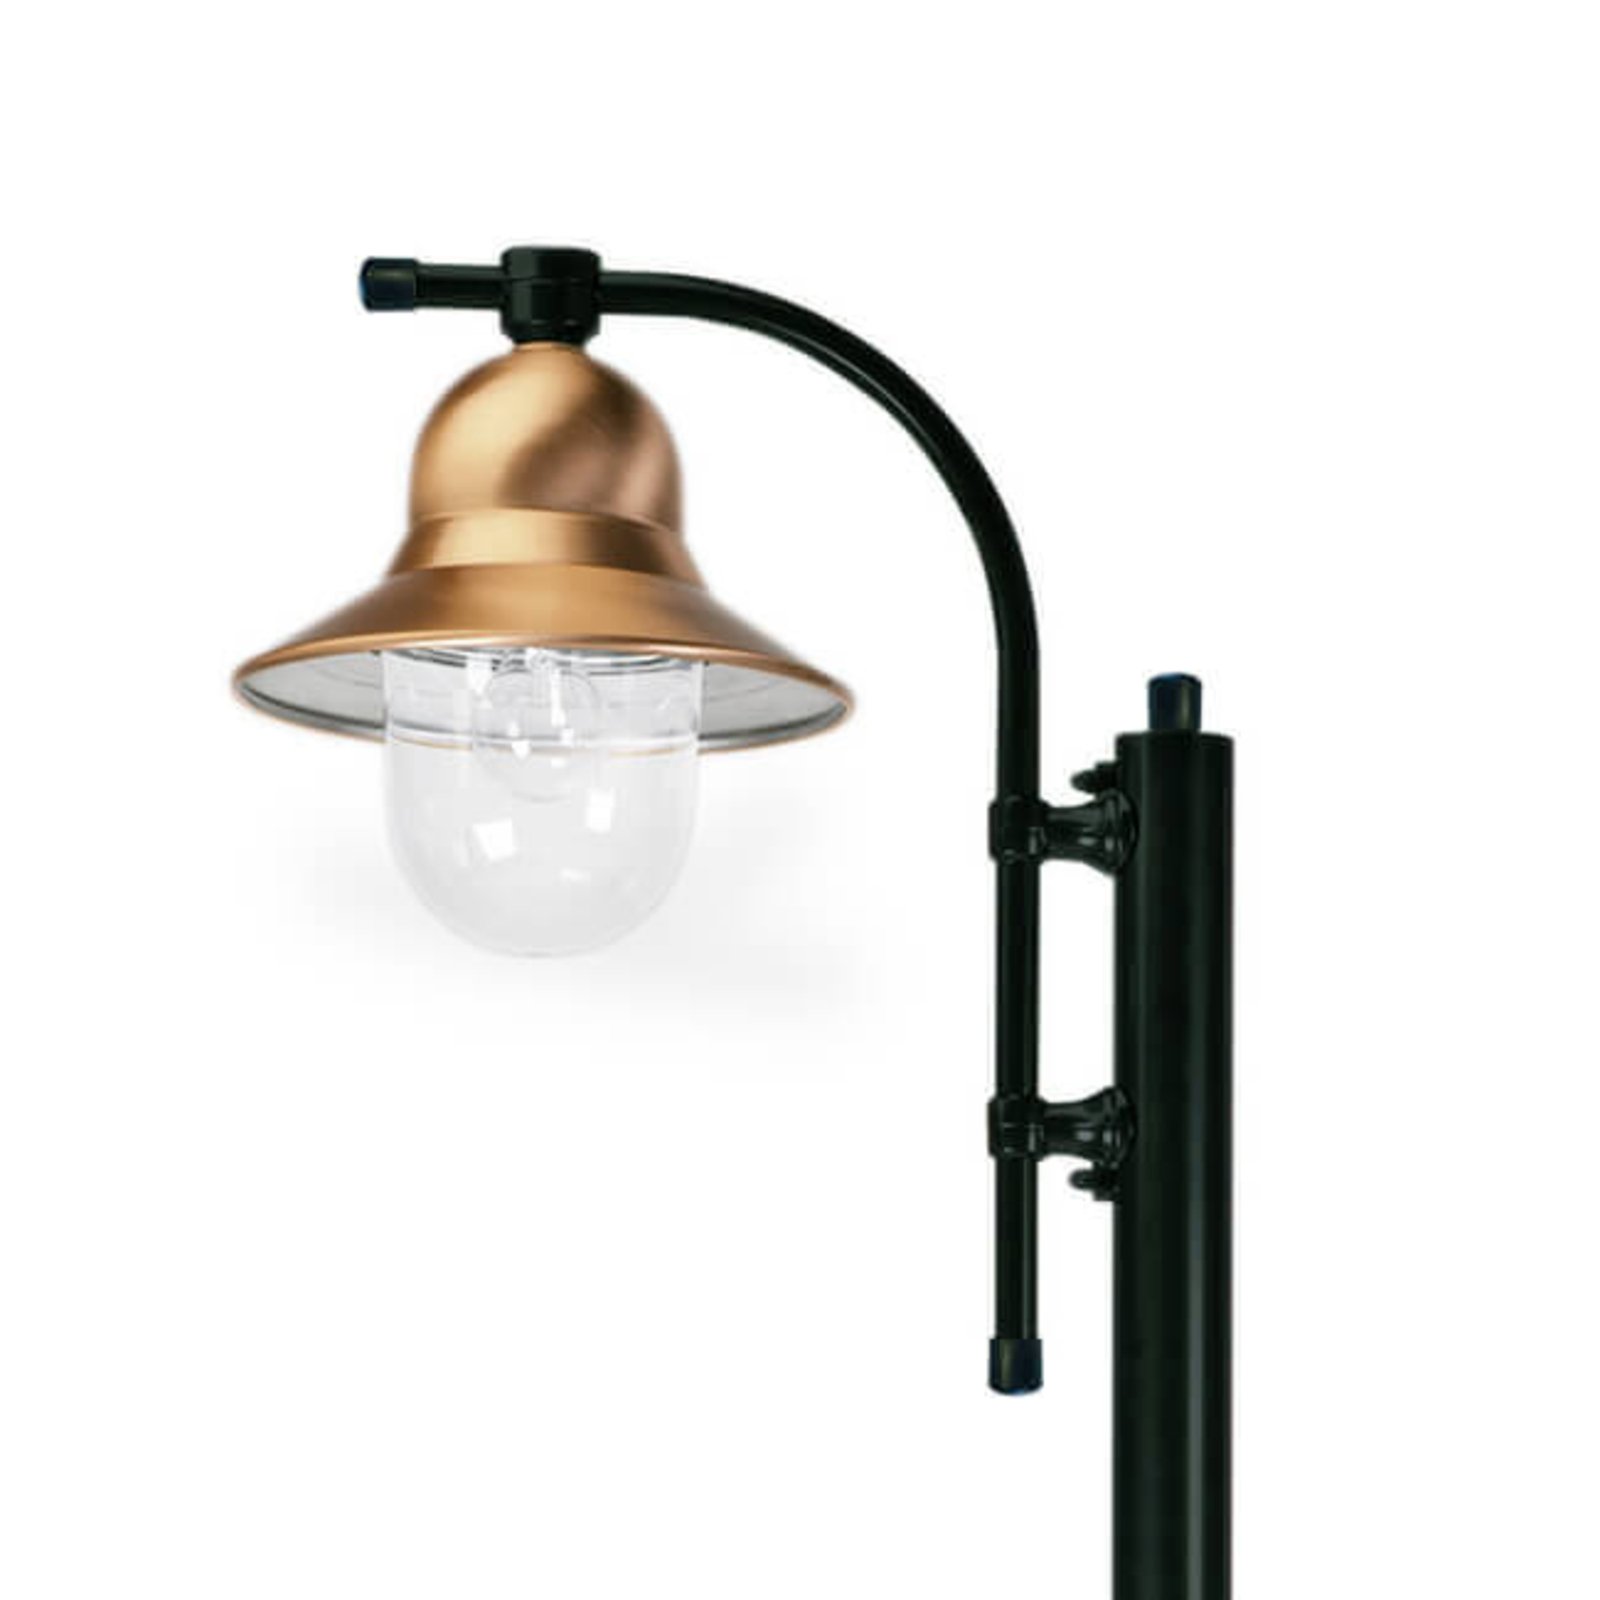 1-lámpás oszloplámpa Toscane 240 cm, fekete